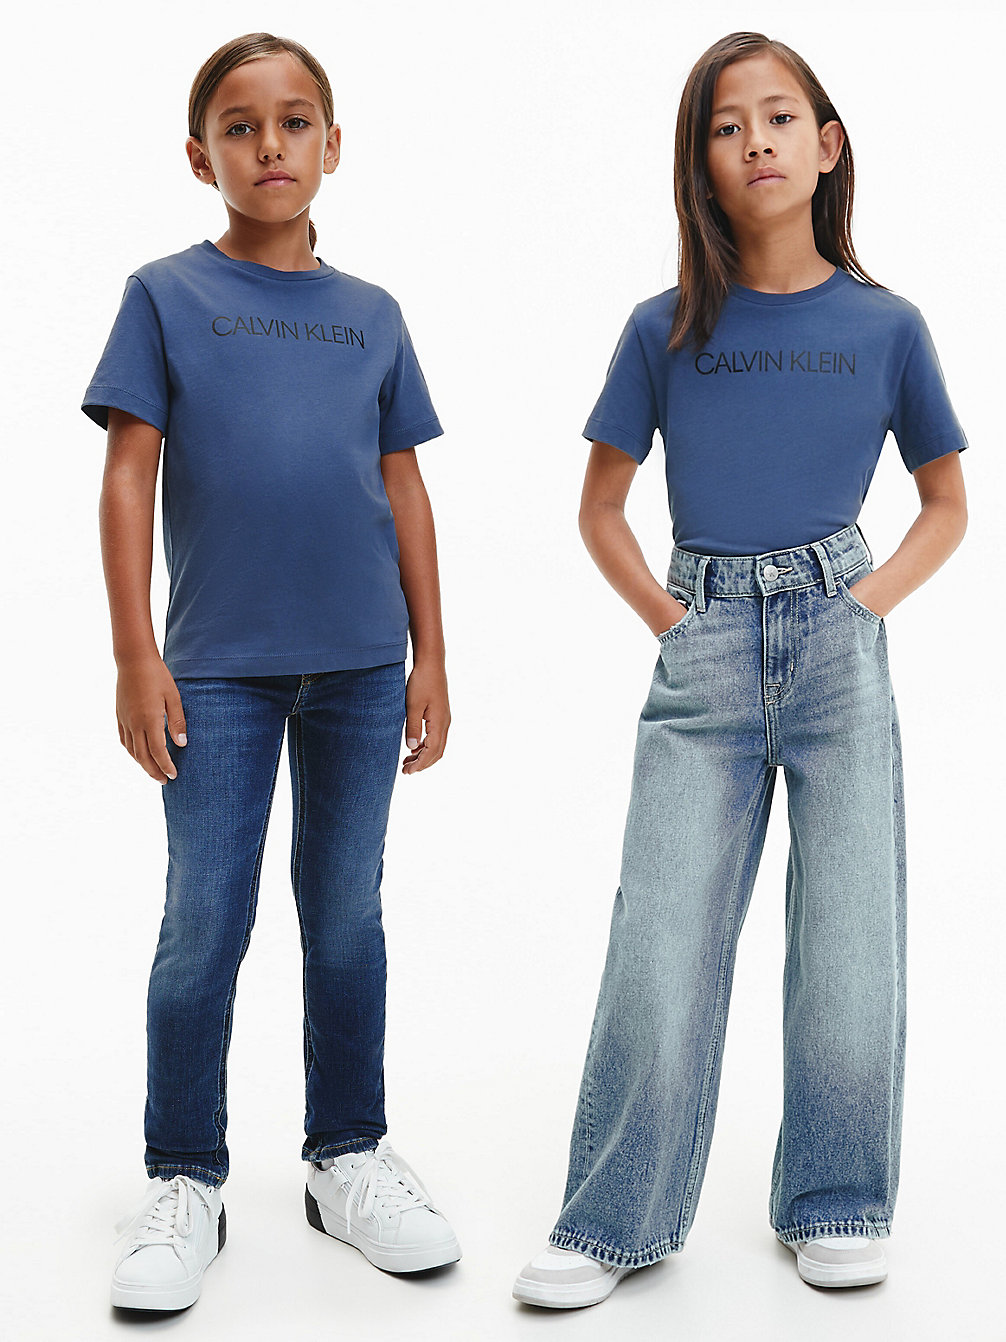 AEGEAN SEA > Dziecięcy T-Shirt Z Logo Z Bawełny Organicznej > undefined kids unisex - Calvin Klein